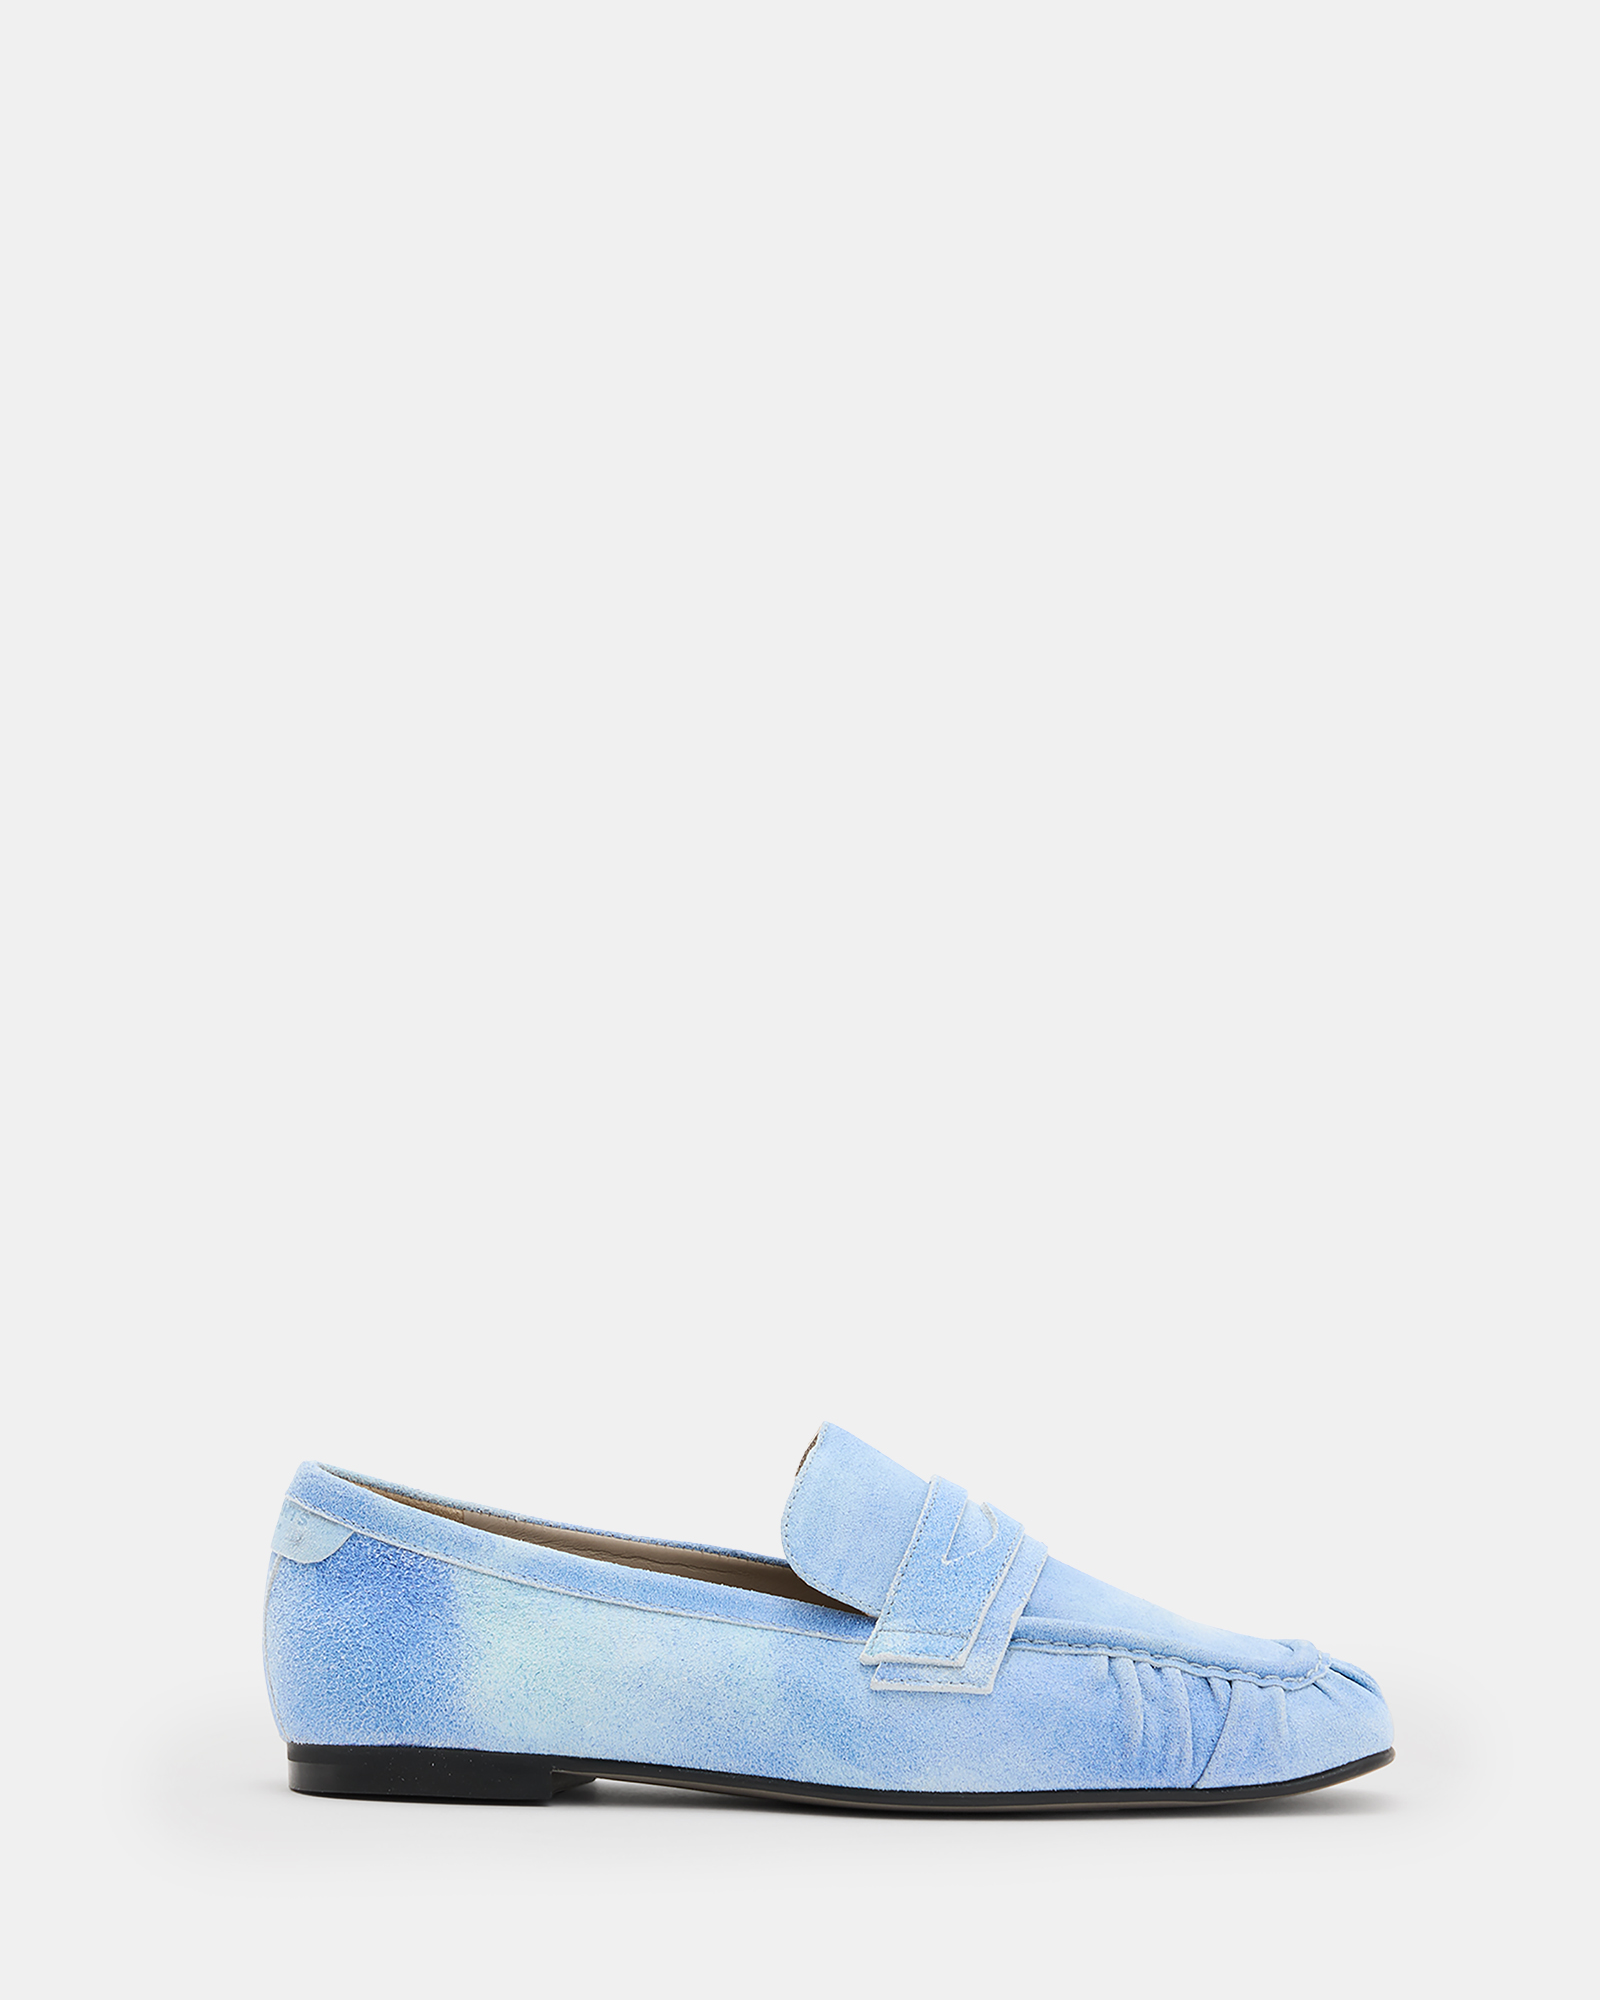 AllSaints Sapphire Suede Loafer Shoes,, Denim Blue